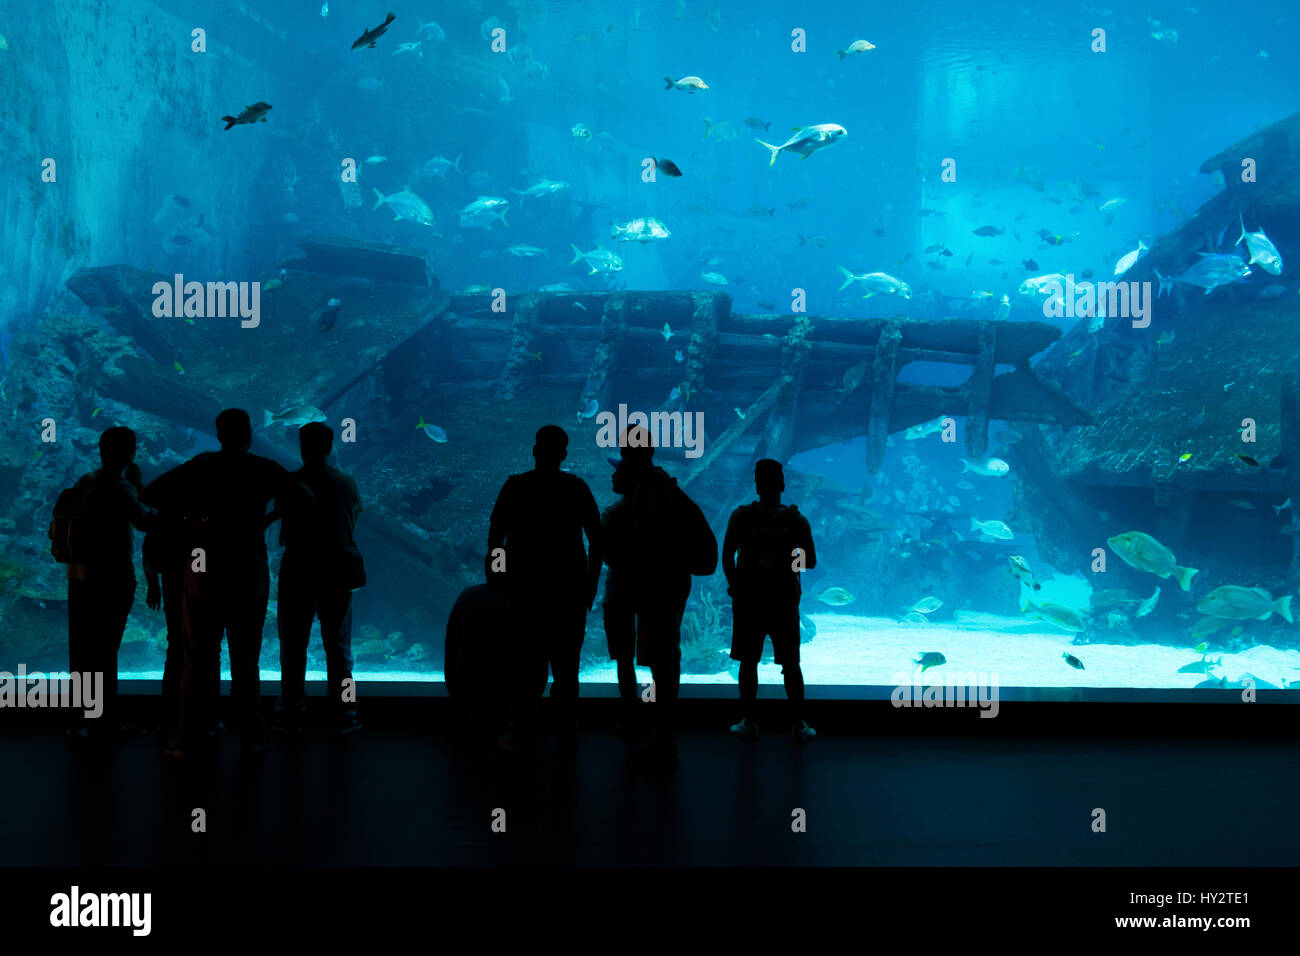 Silhouettes of people against a big aquarium. Tourist looking fish in aquarium. Stock Photo